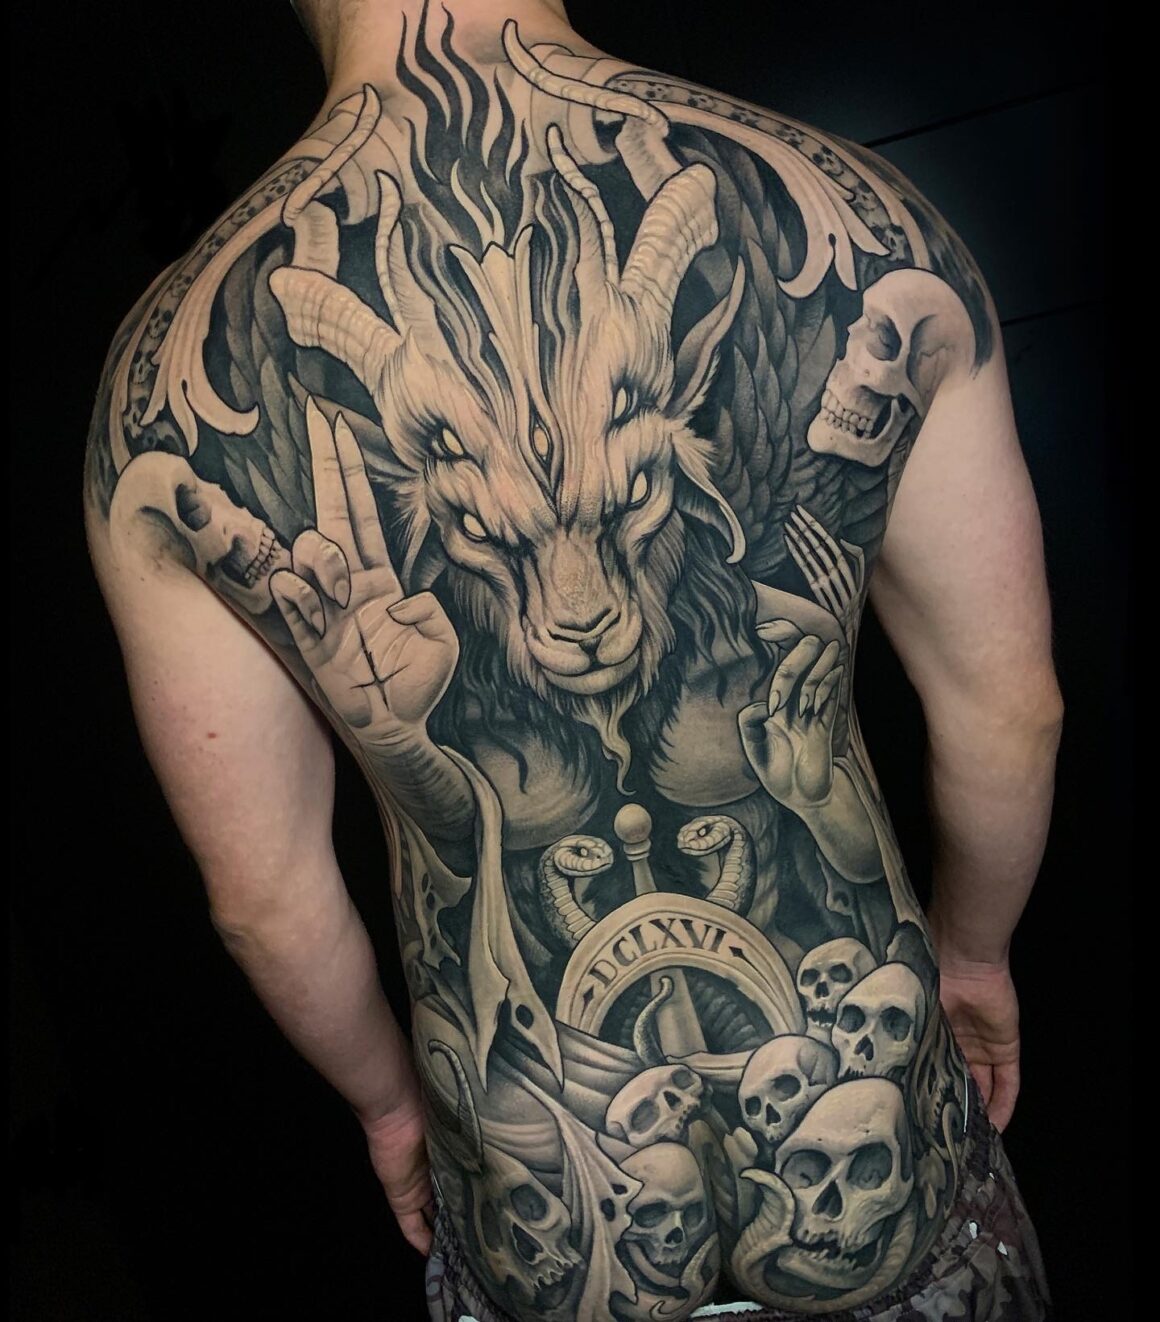 Julian Siebert, Corpsepainter Tattoo, Munich, Germany